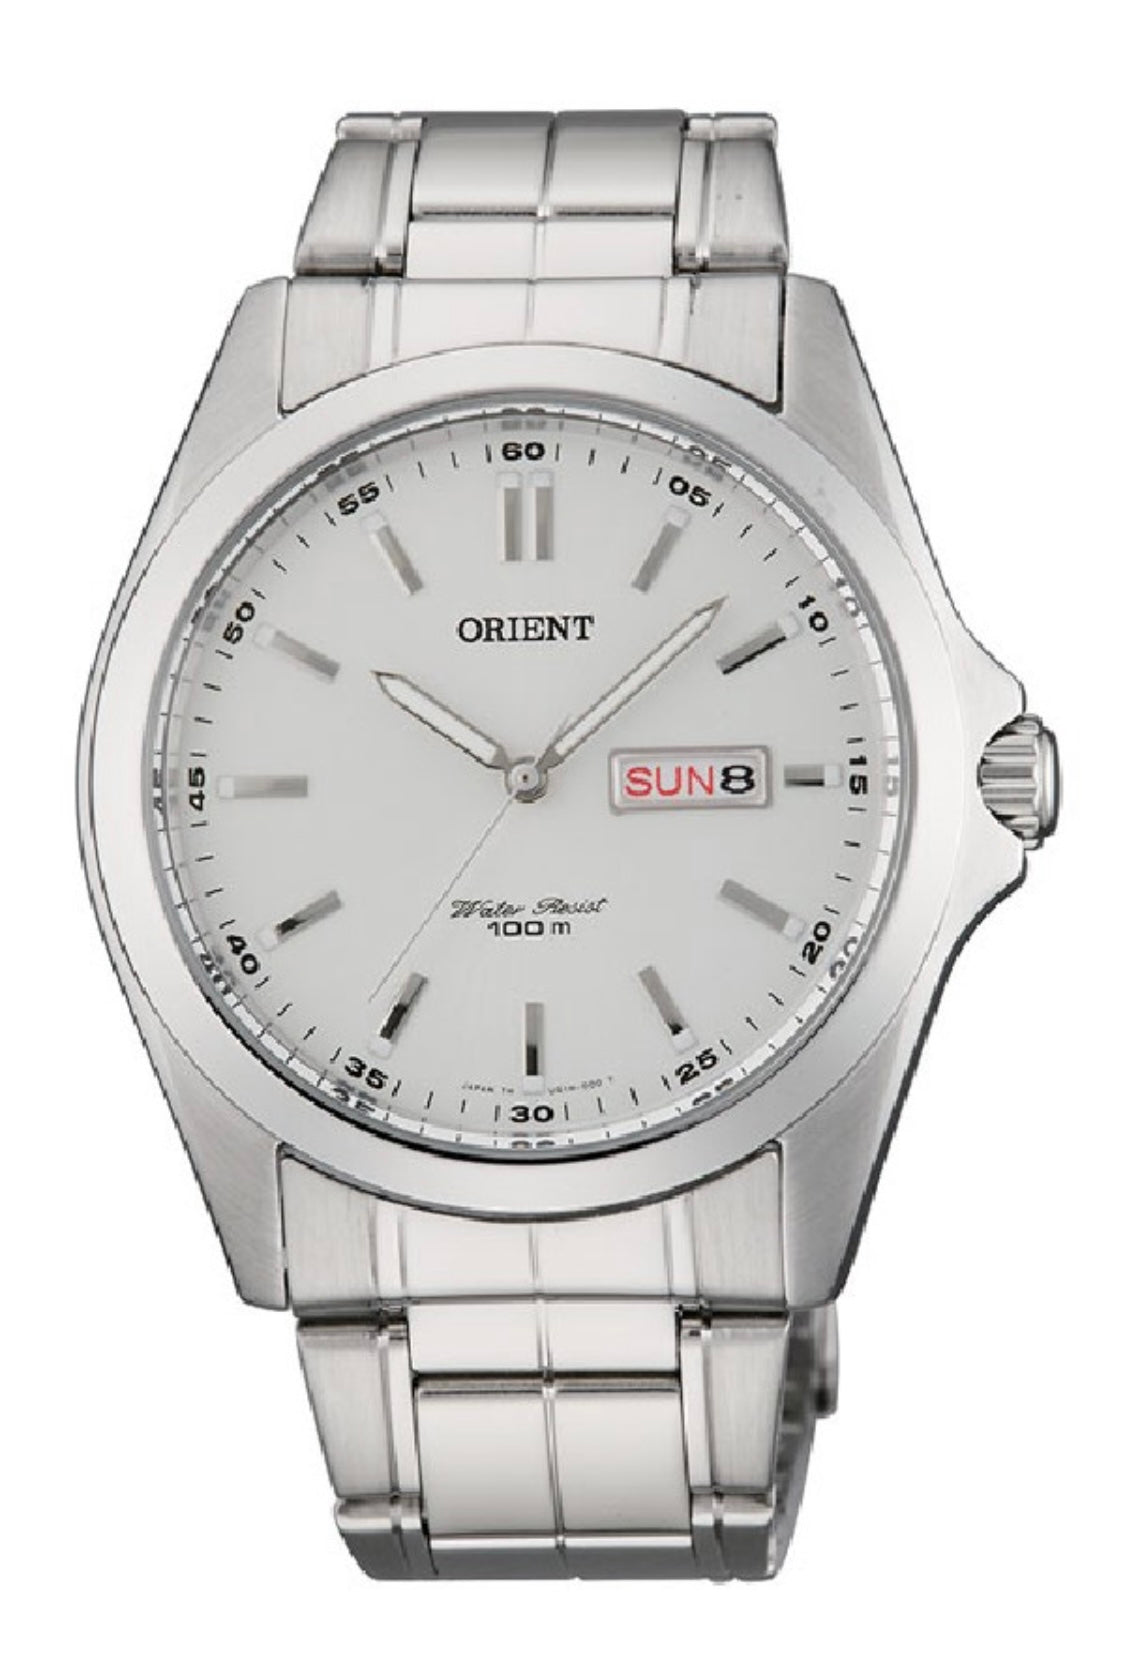 Men's watch Orient FUG1H001W6 Classic Quartz